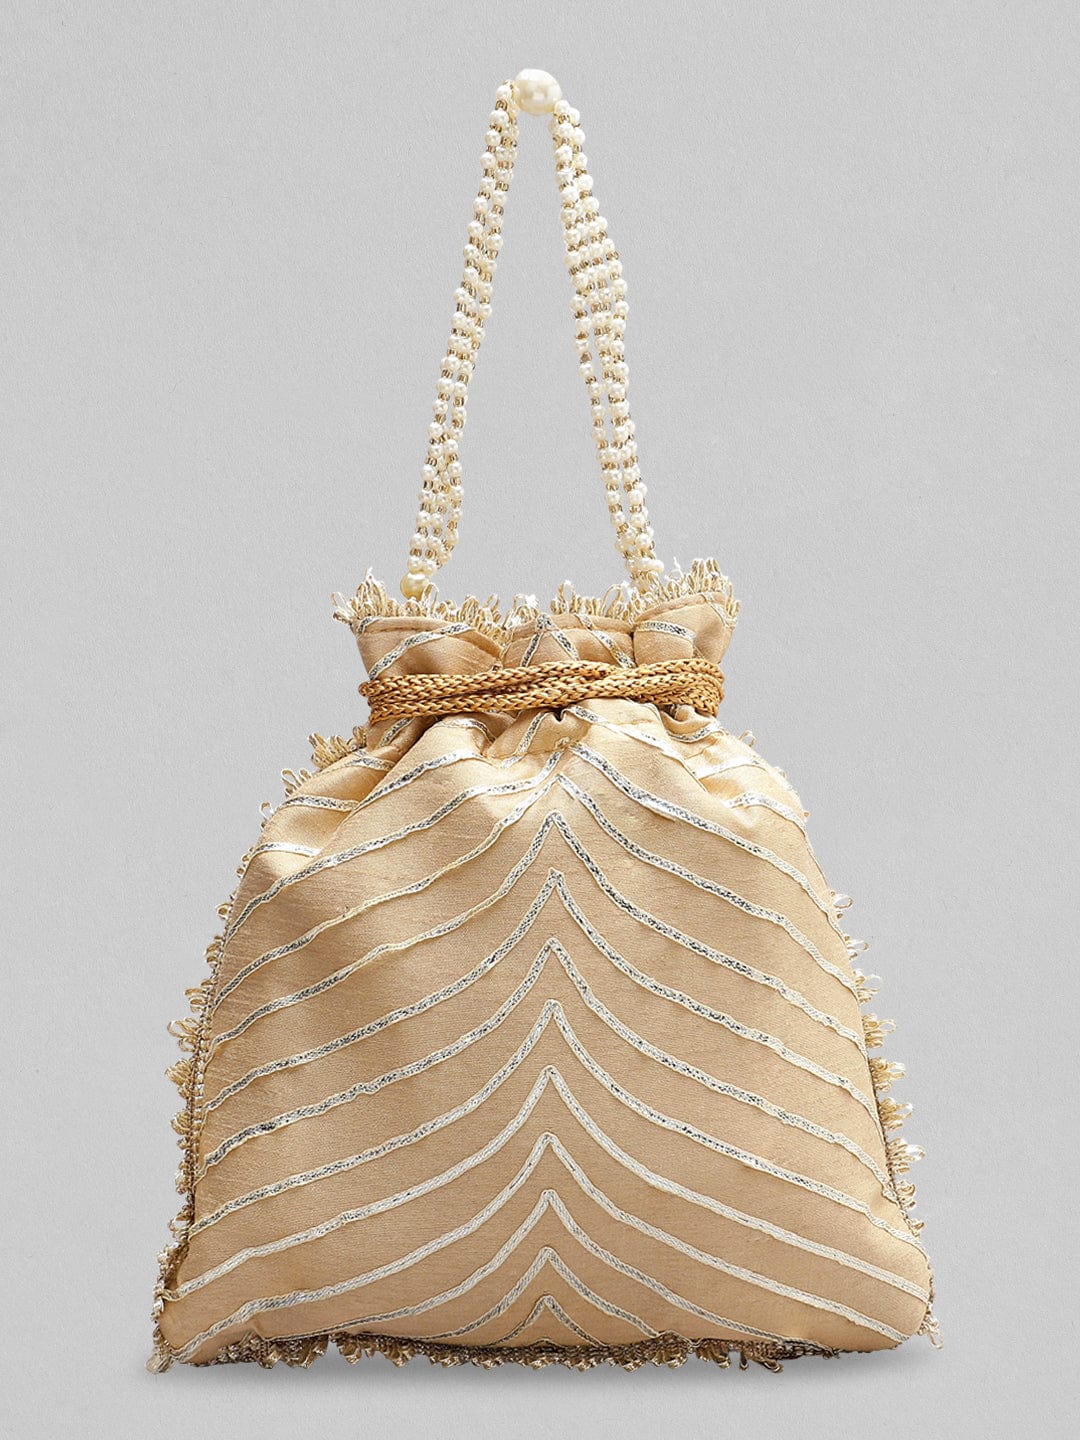 Buy NEEDLEHANDICRAFTS Handcrafted Golden Bridal Potli Bags OnlineGolden  Online at Best Prices in India  JioMart